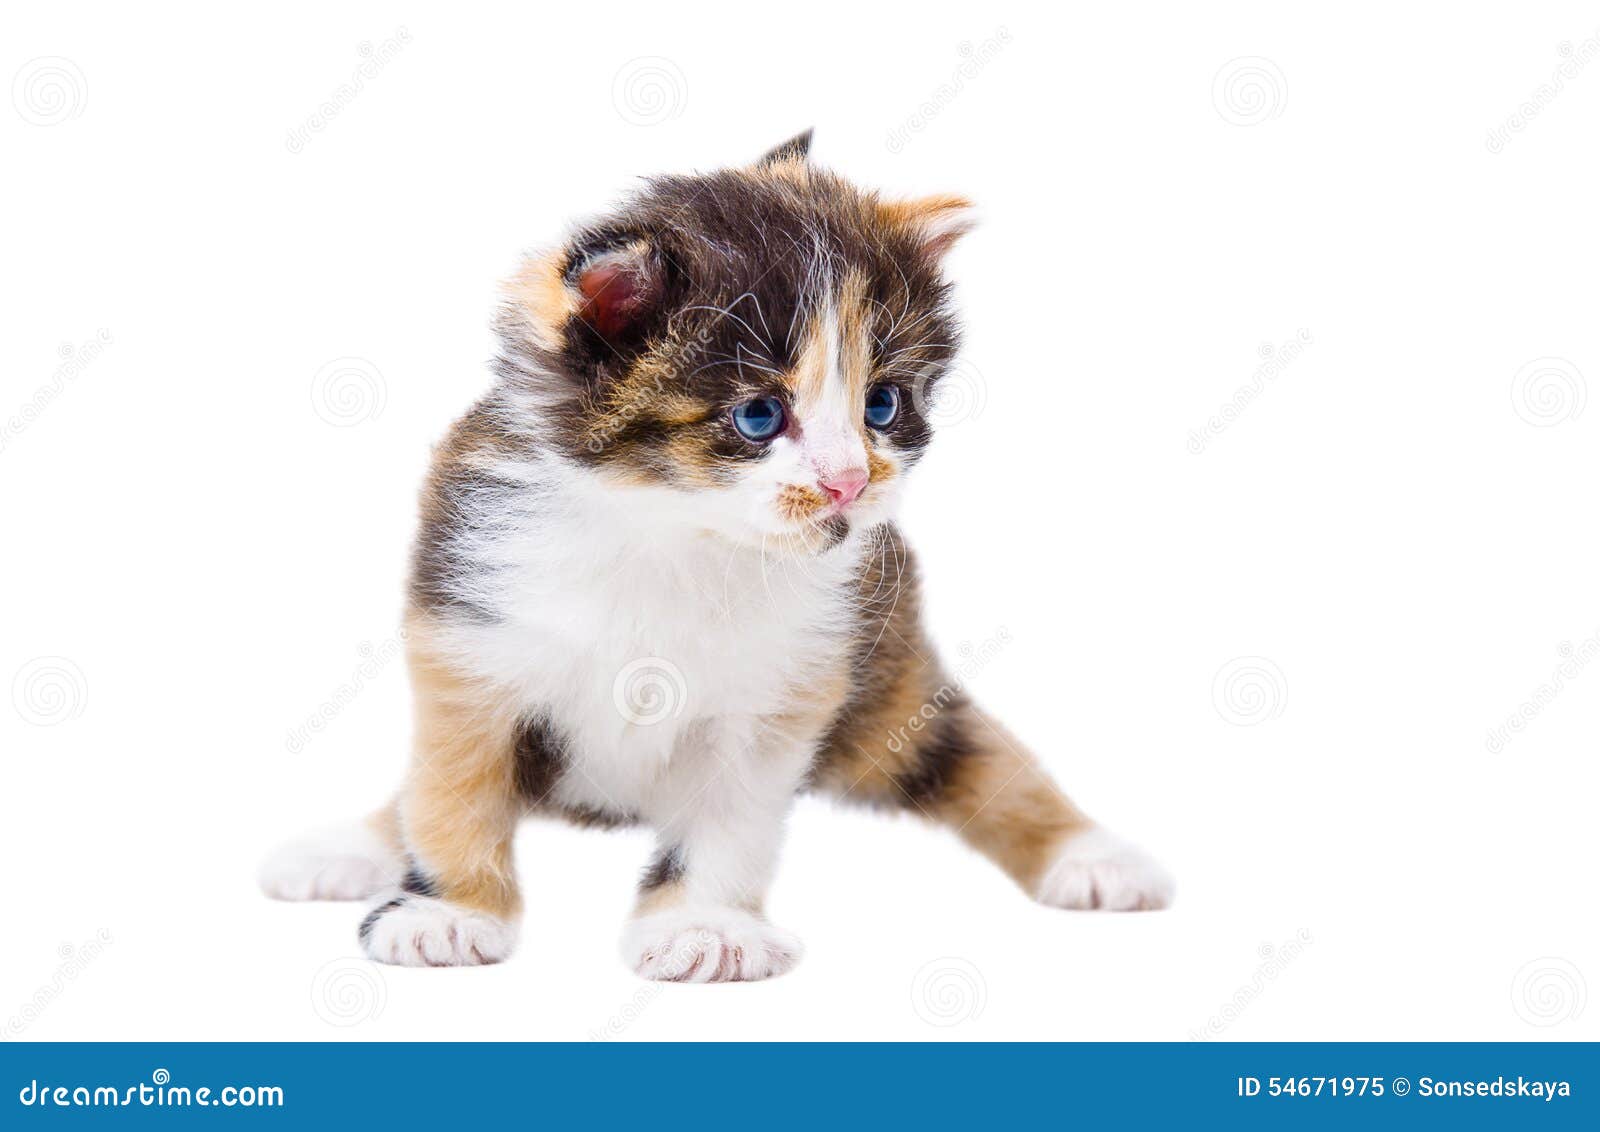 cute tricolor kitten